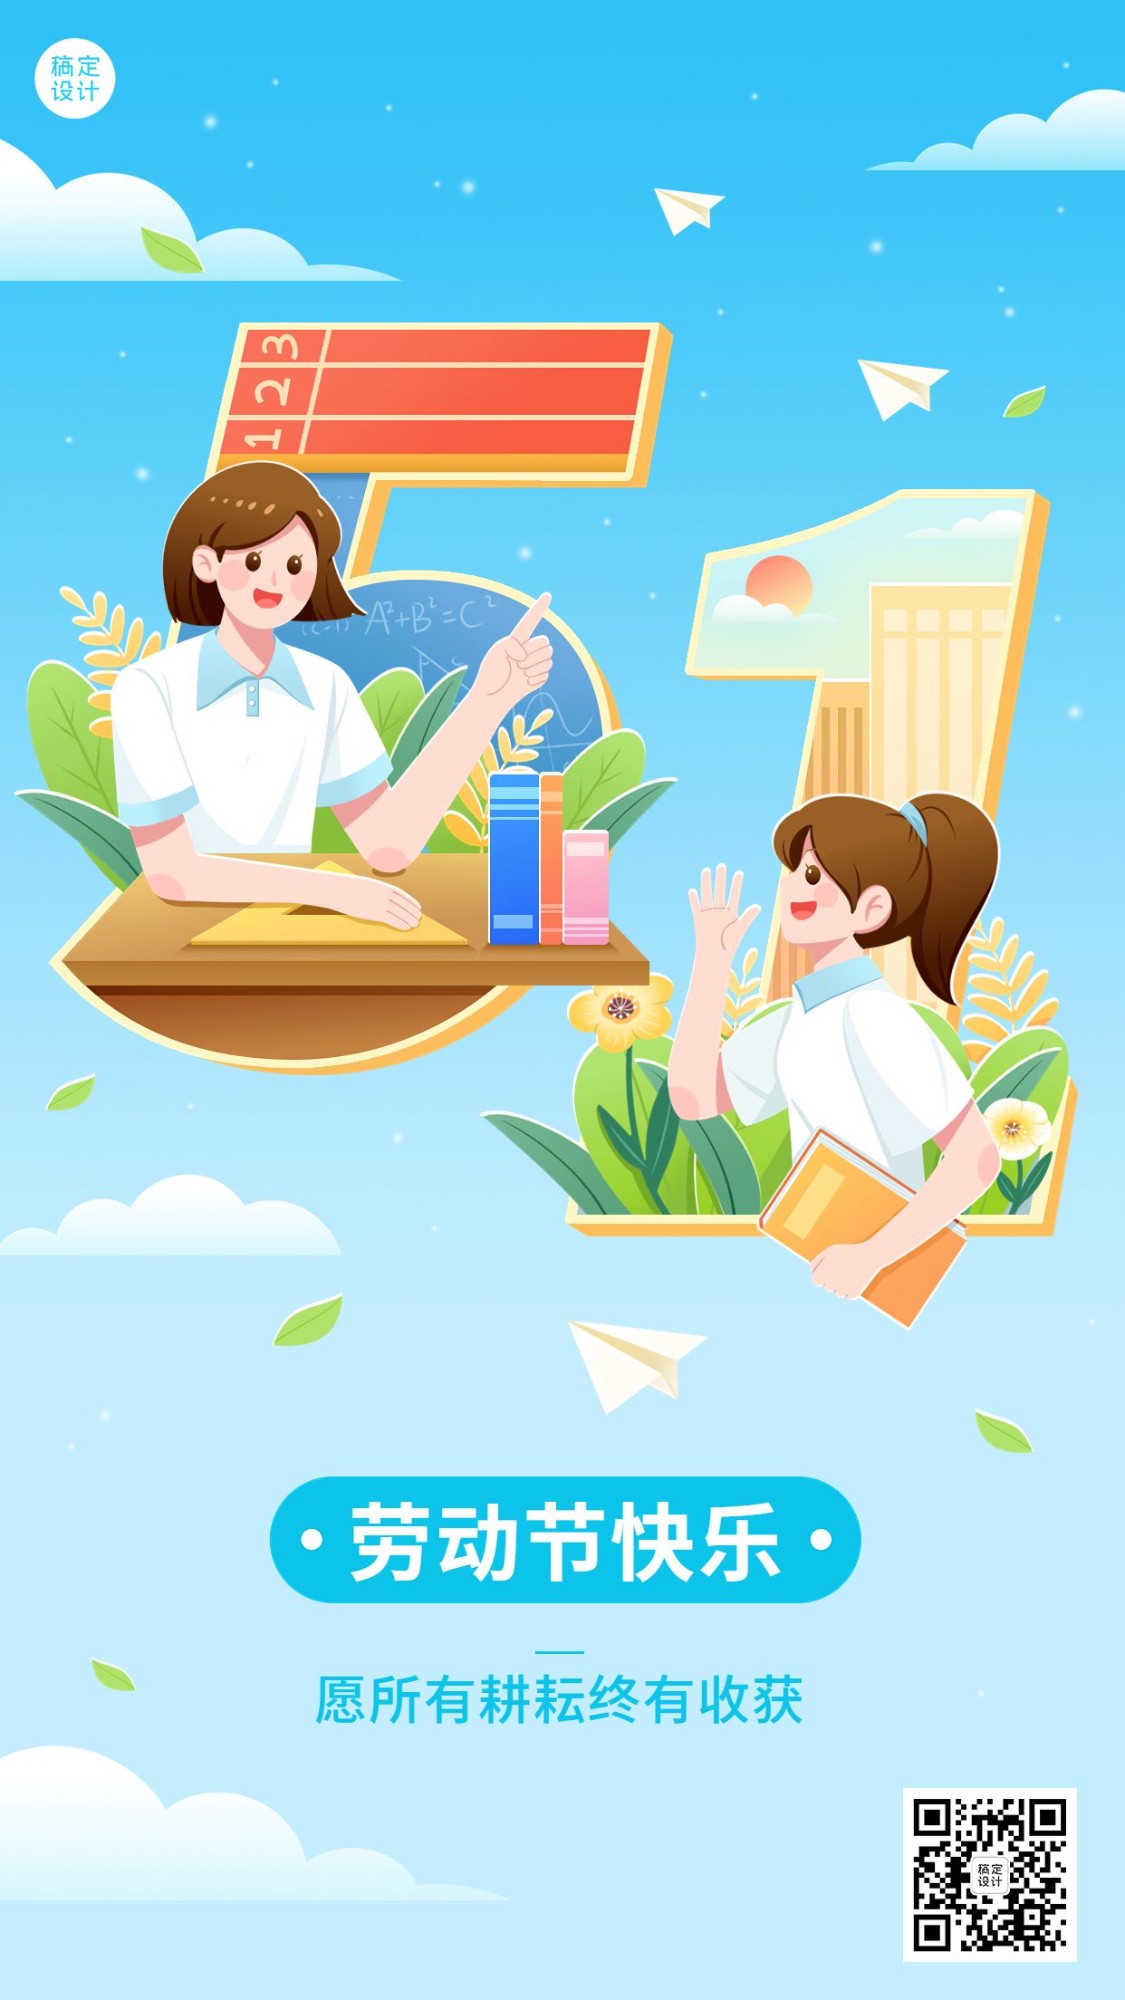 五一劳动节祝福K12行业劳动节祝福插画手机海报预览效果